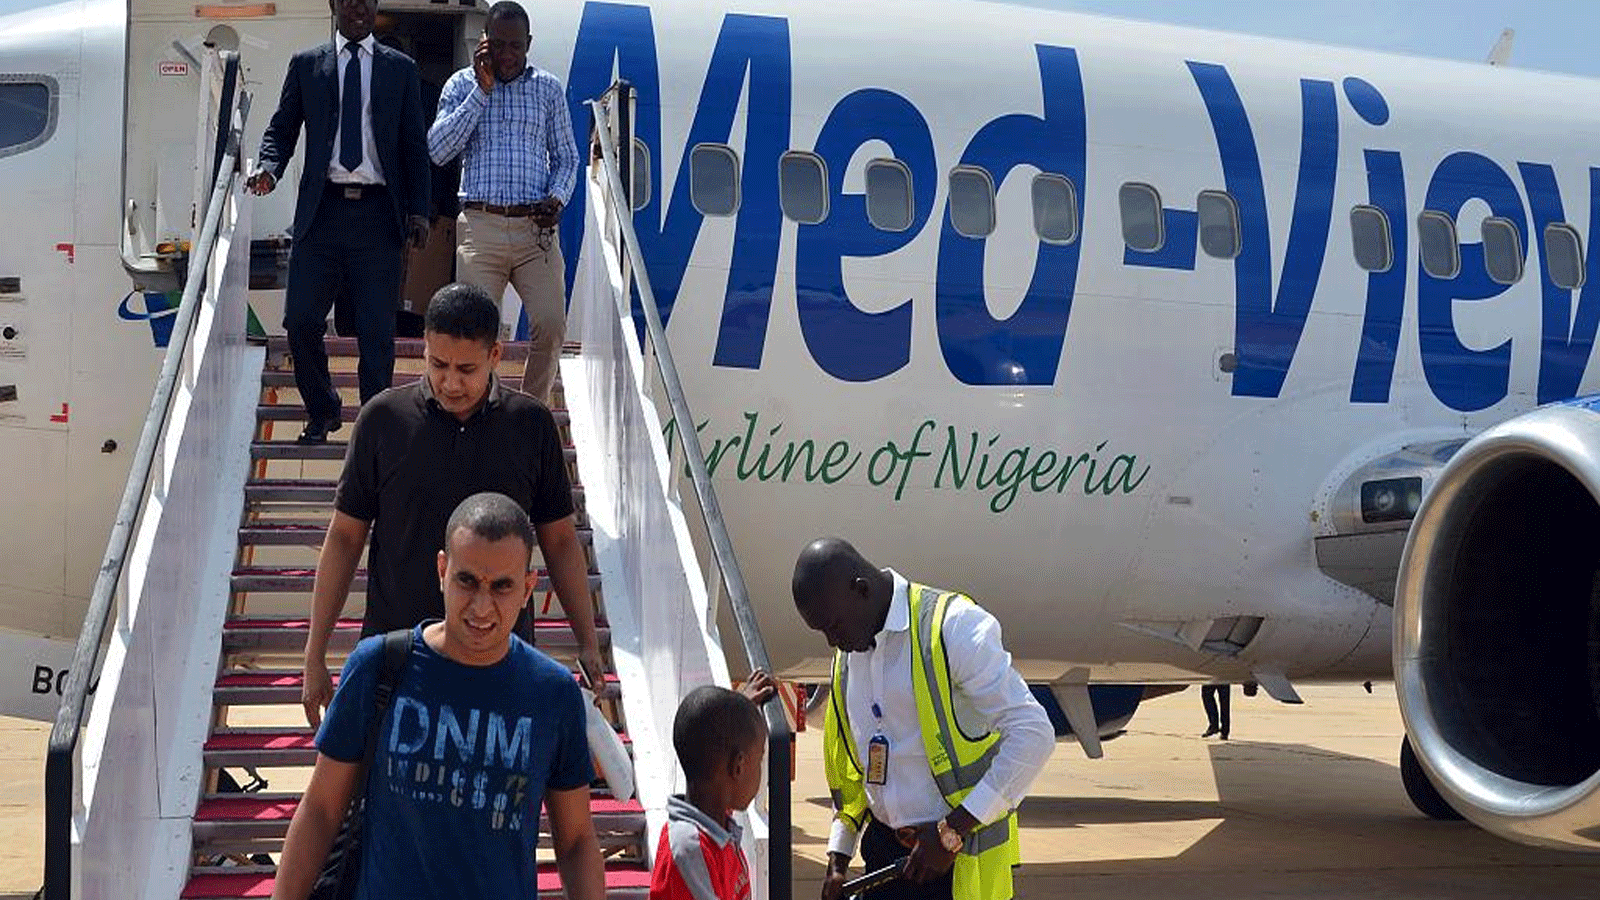 ركاب ينزلون من طائرة من طراز Med-View Airline في مطار مايدوجوري في 10 تموز\يوليو 2015